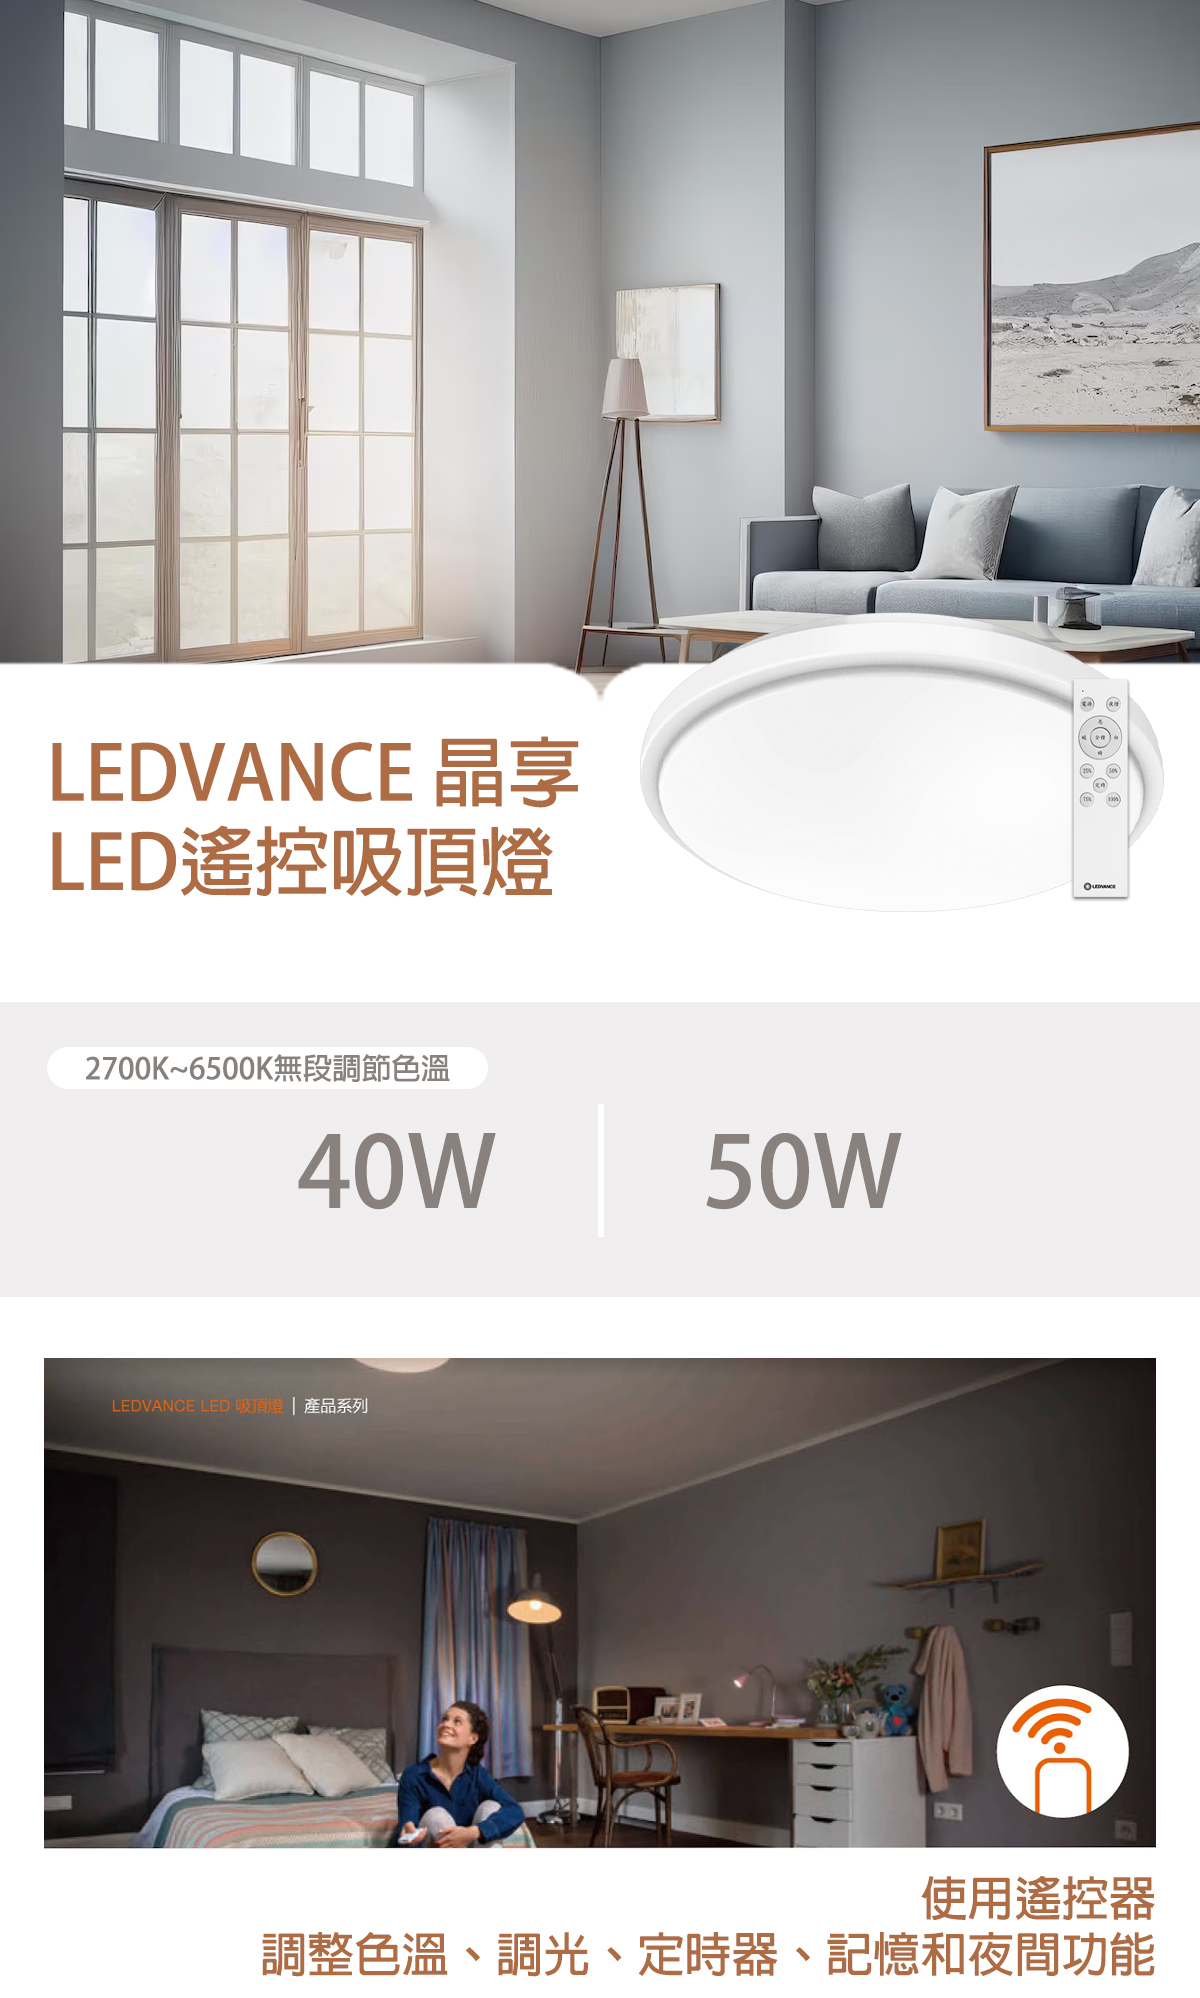 【朗德萬斯】LED 晶享遙控吸頂燈 40W 50W 快裝設計 適用3~5坪